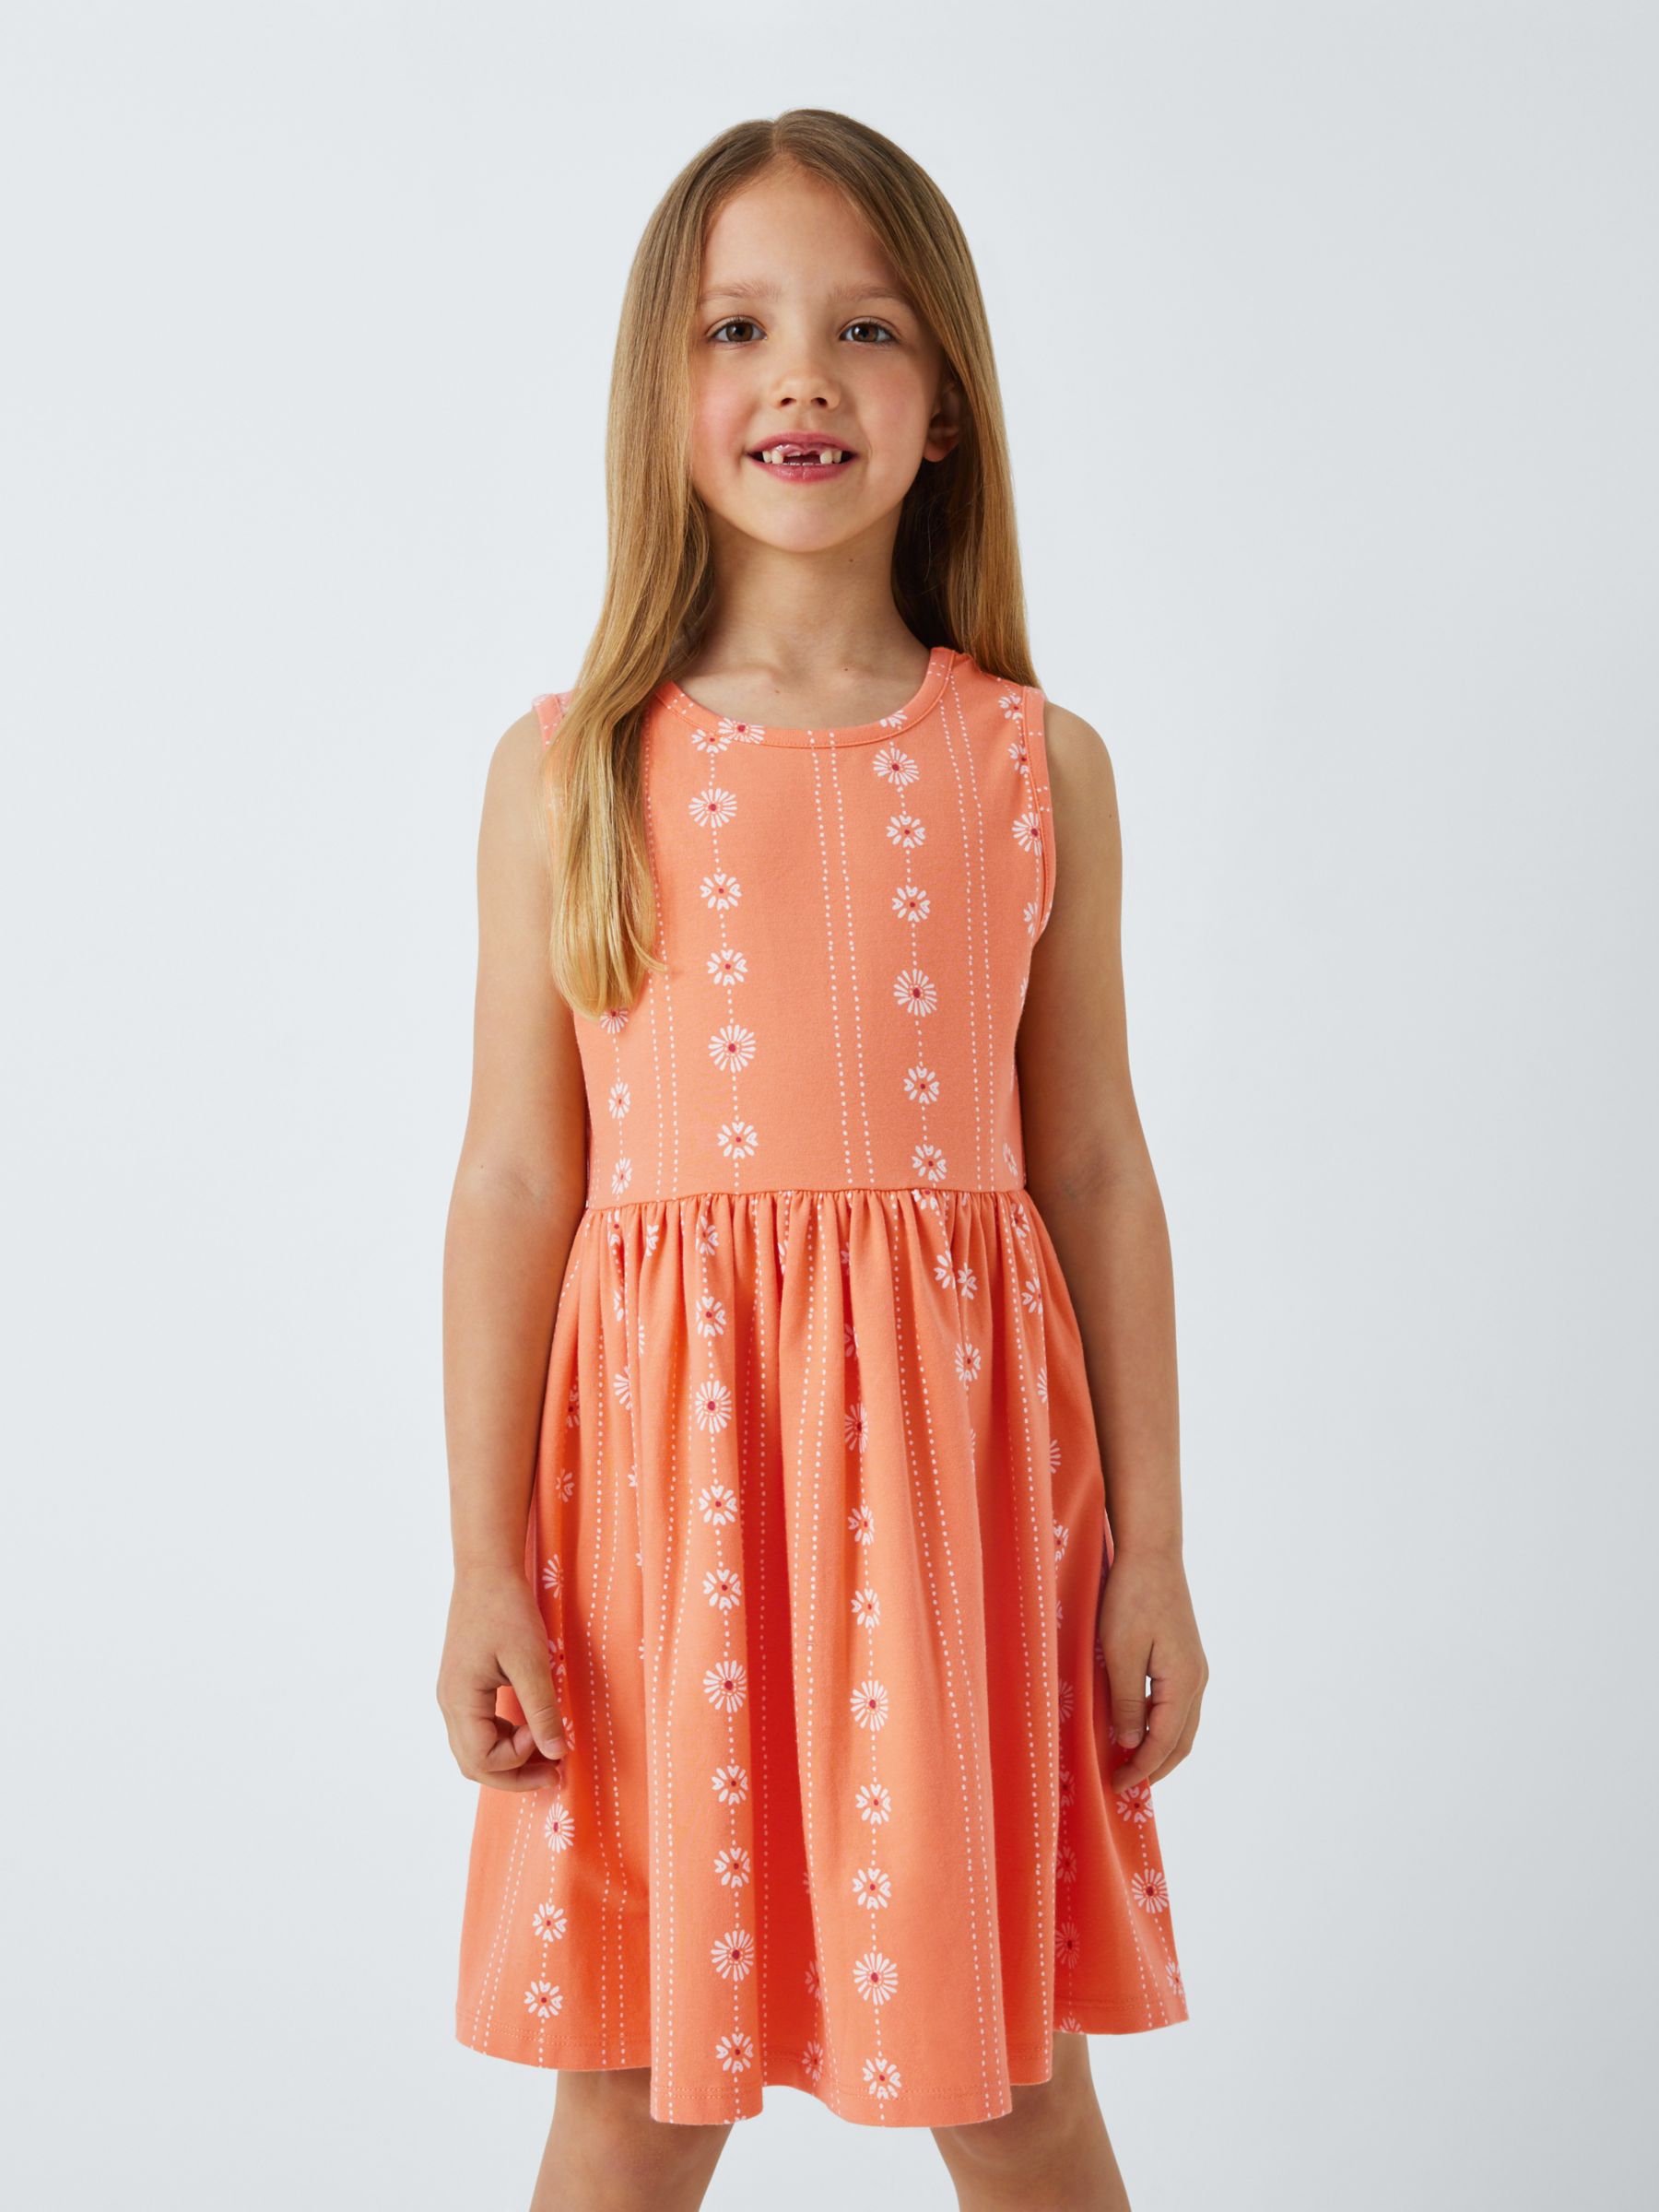 John Lewis Kids' Floral Stripe Sleeveless Smock Dress, Coral, 6 years